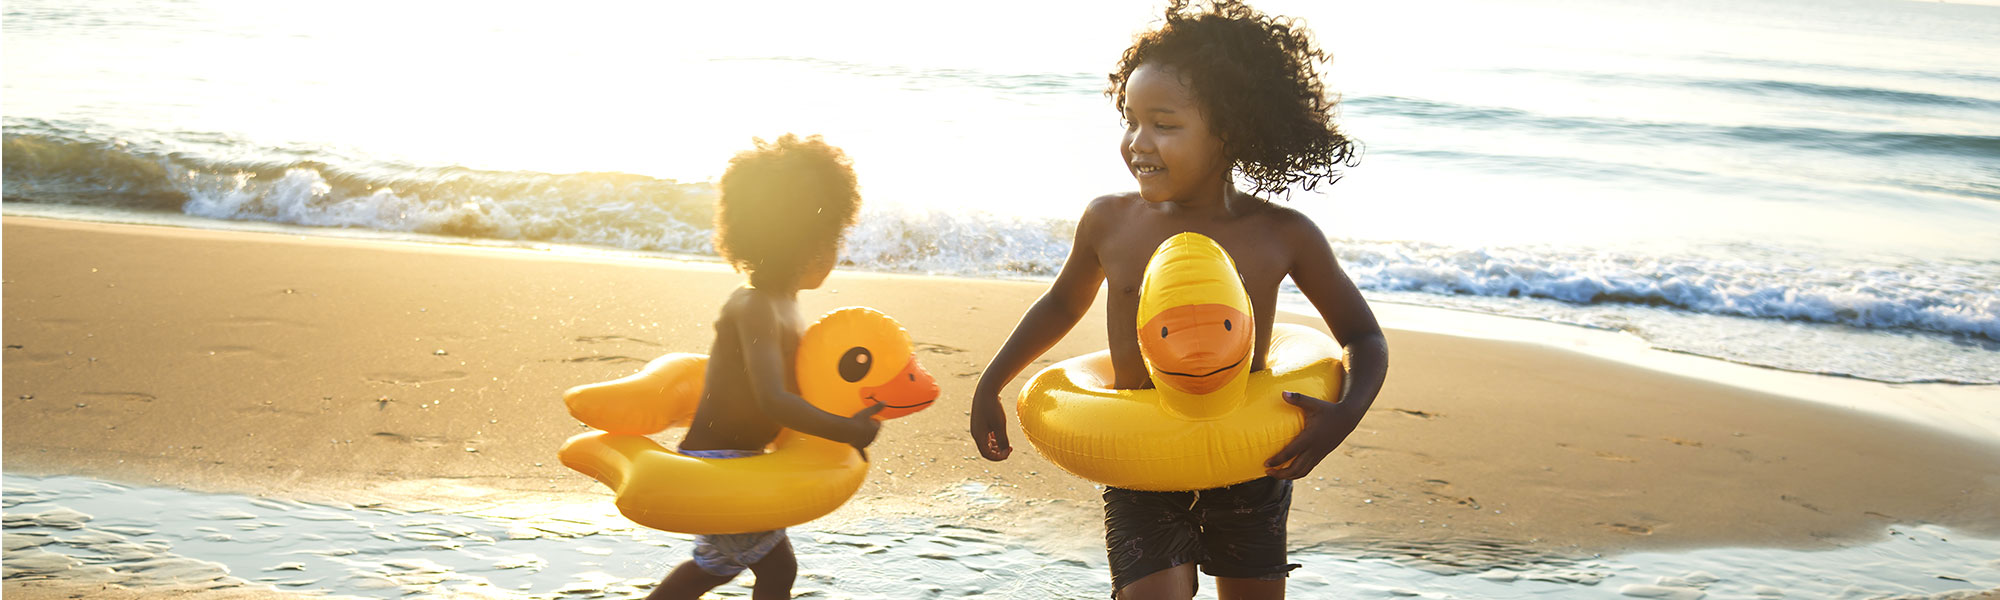 children playing on beach wearing inner tube duckies